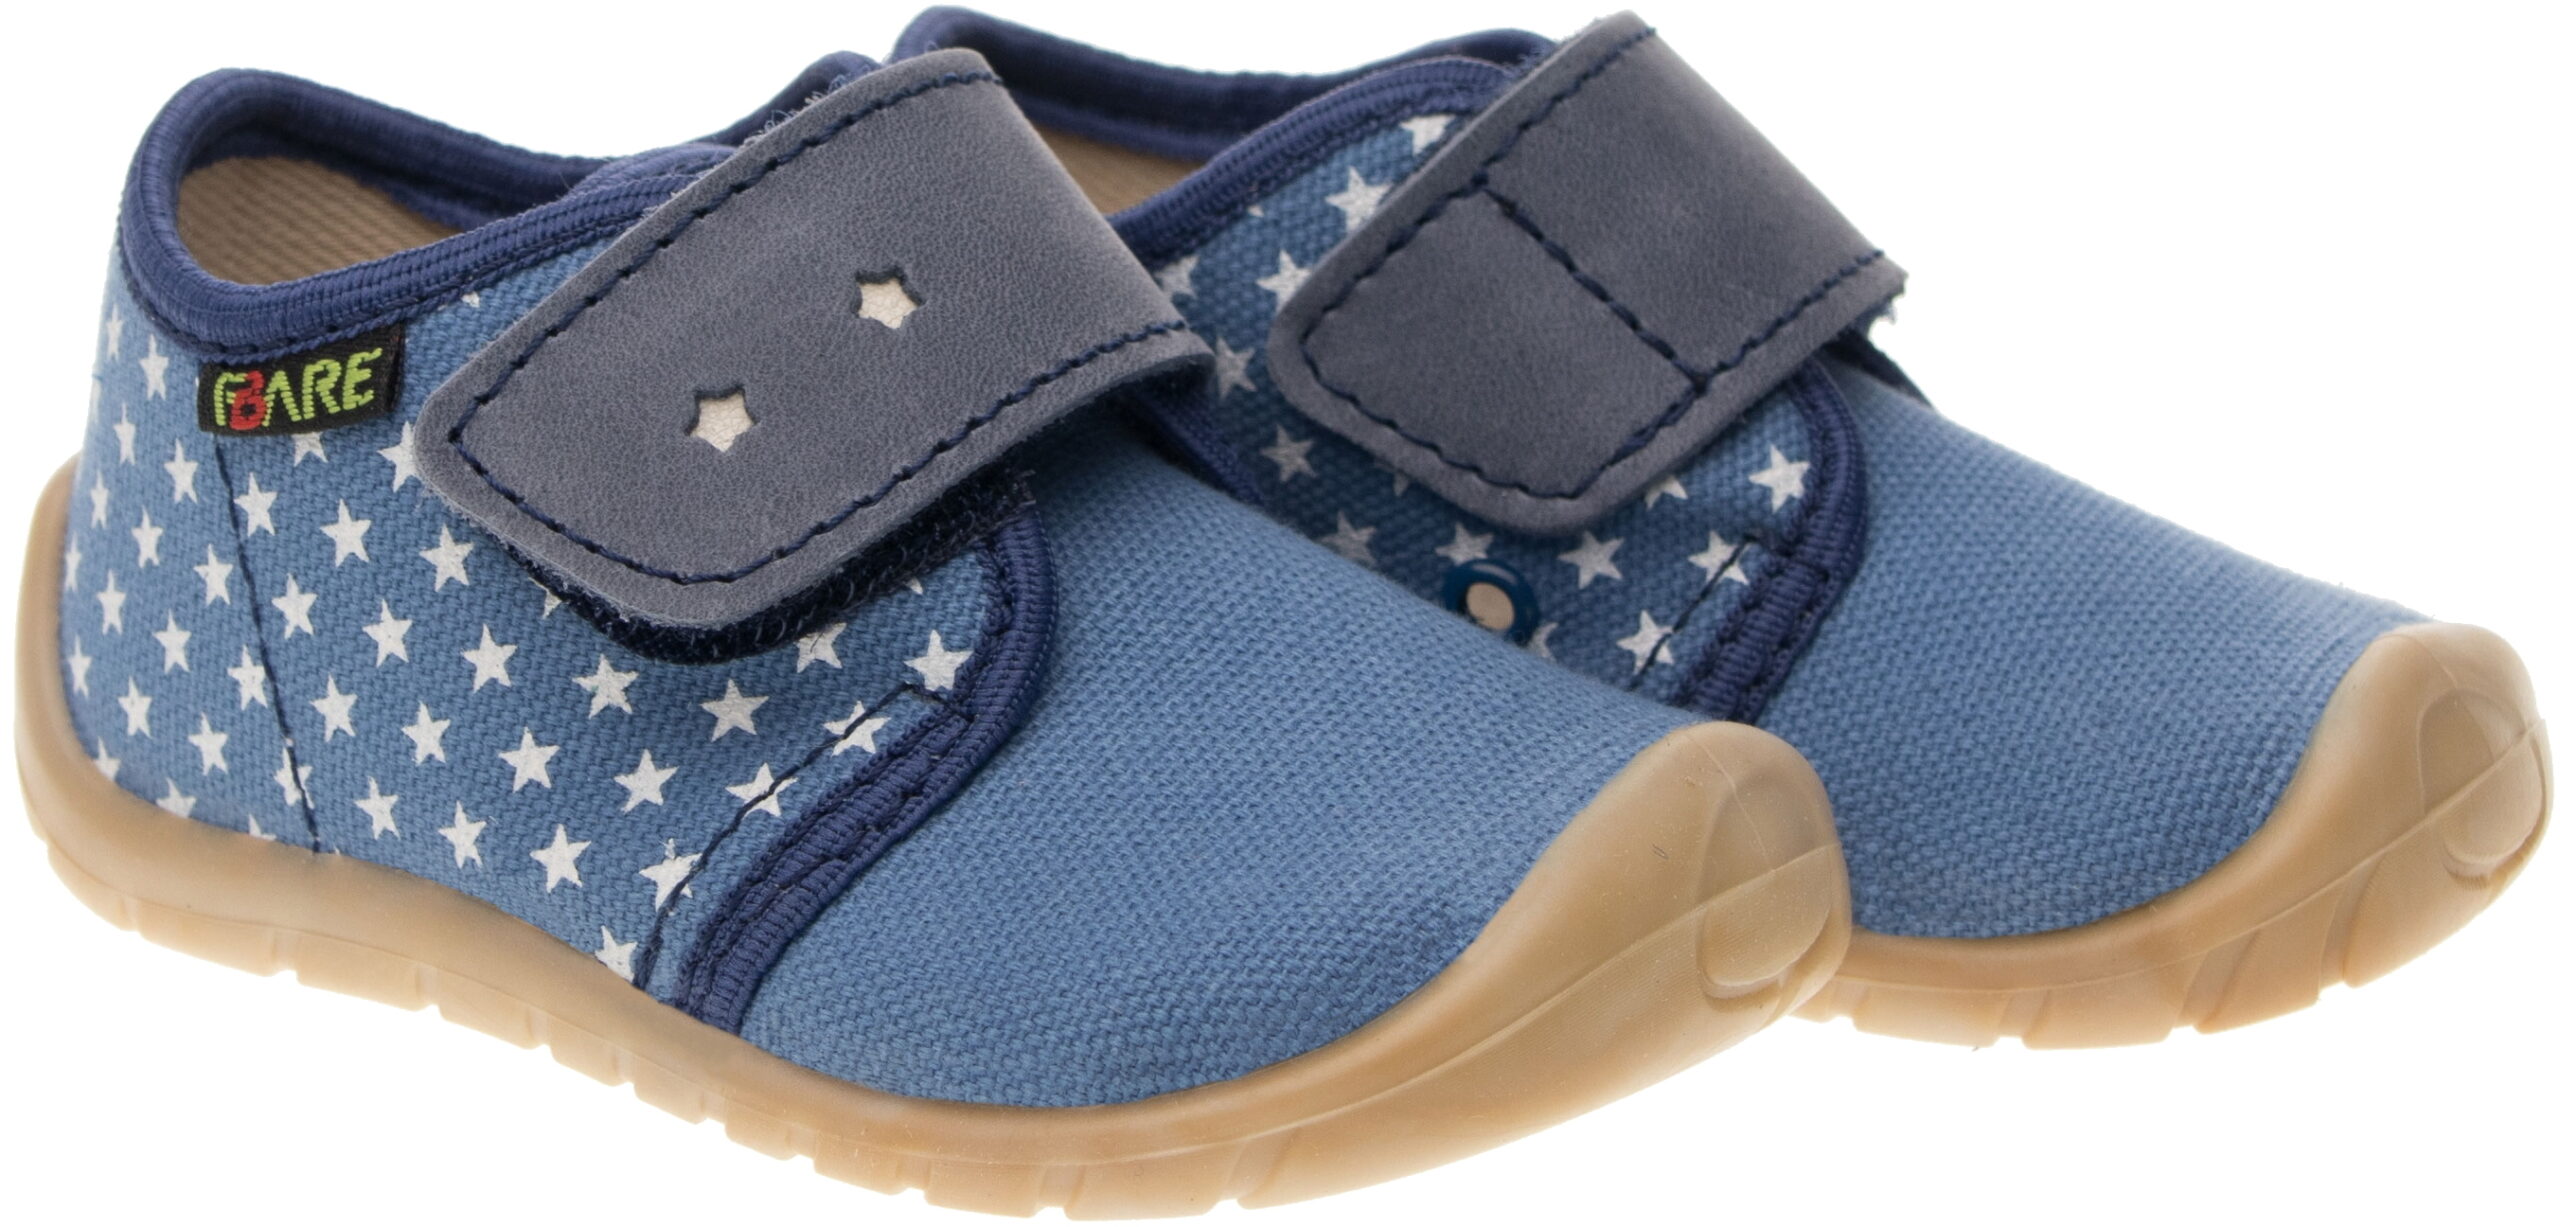 Fare Bare tennised, sinine, paeltega Laste barefoot jalatsid - HellyK - Kvaliteetsed lasteriided, villariided, barefoot jalatsid